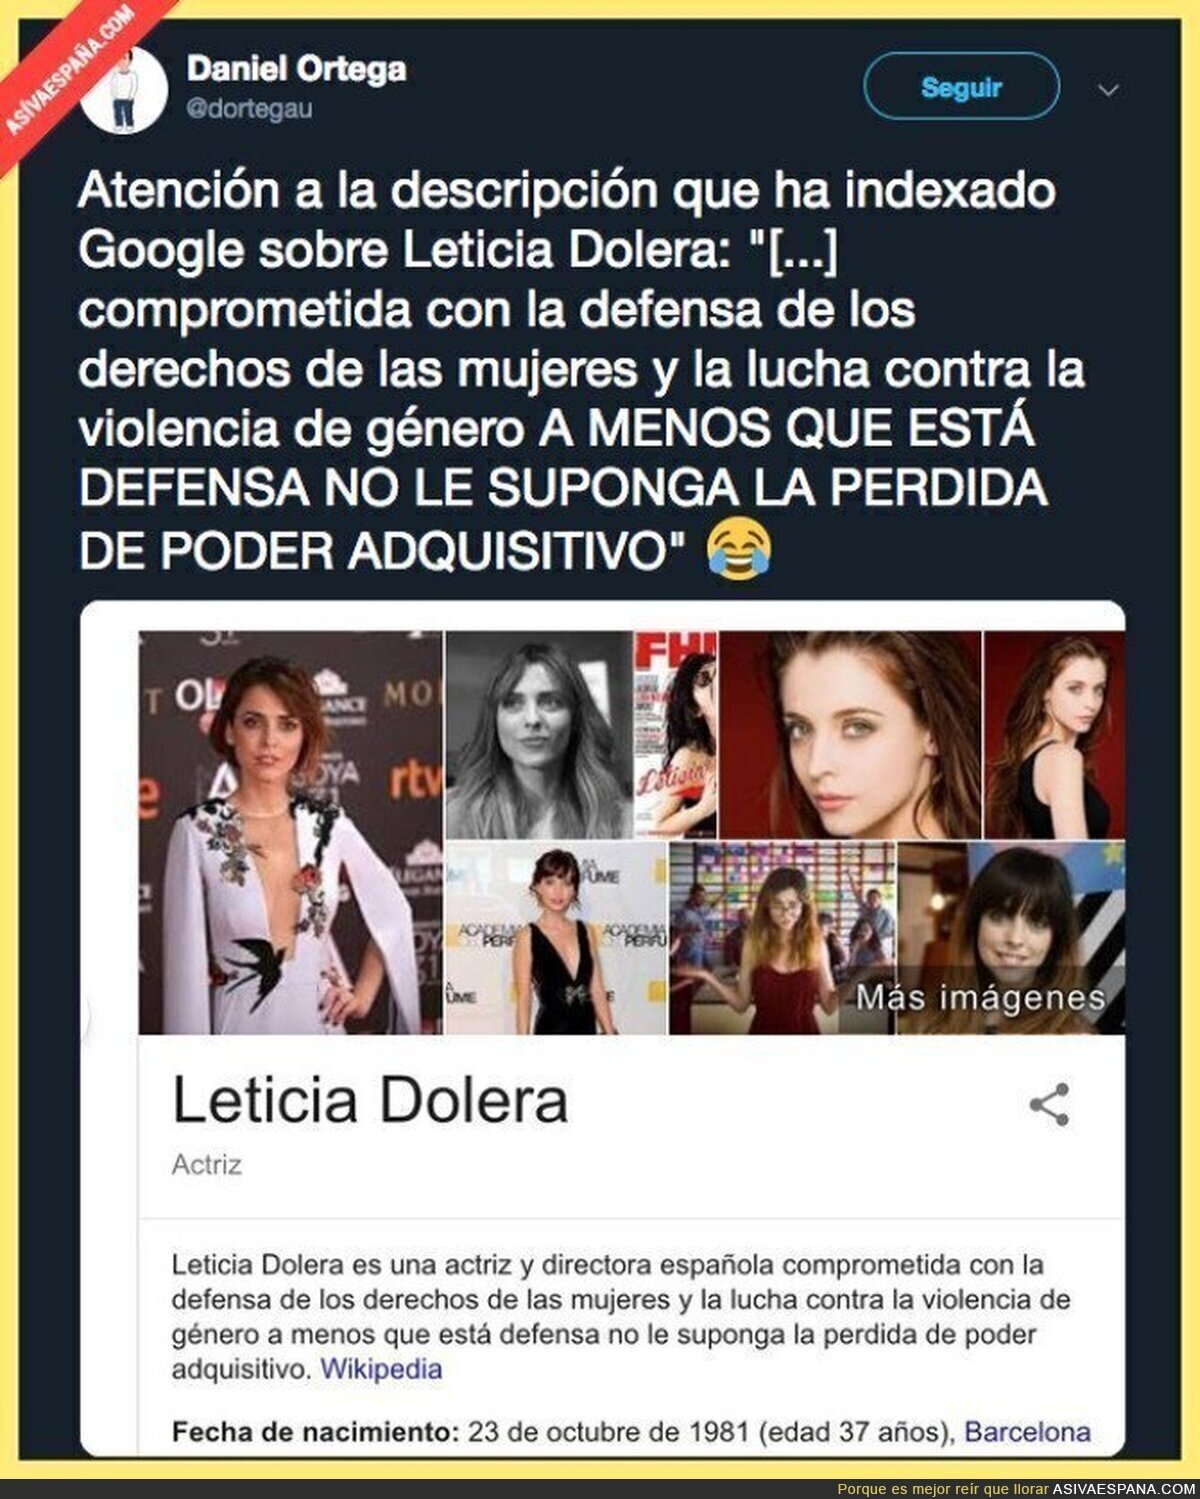 La Wikipedia de Leticia Dolera se actualiza